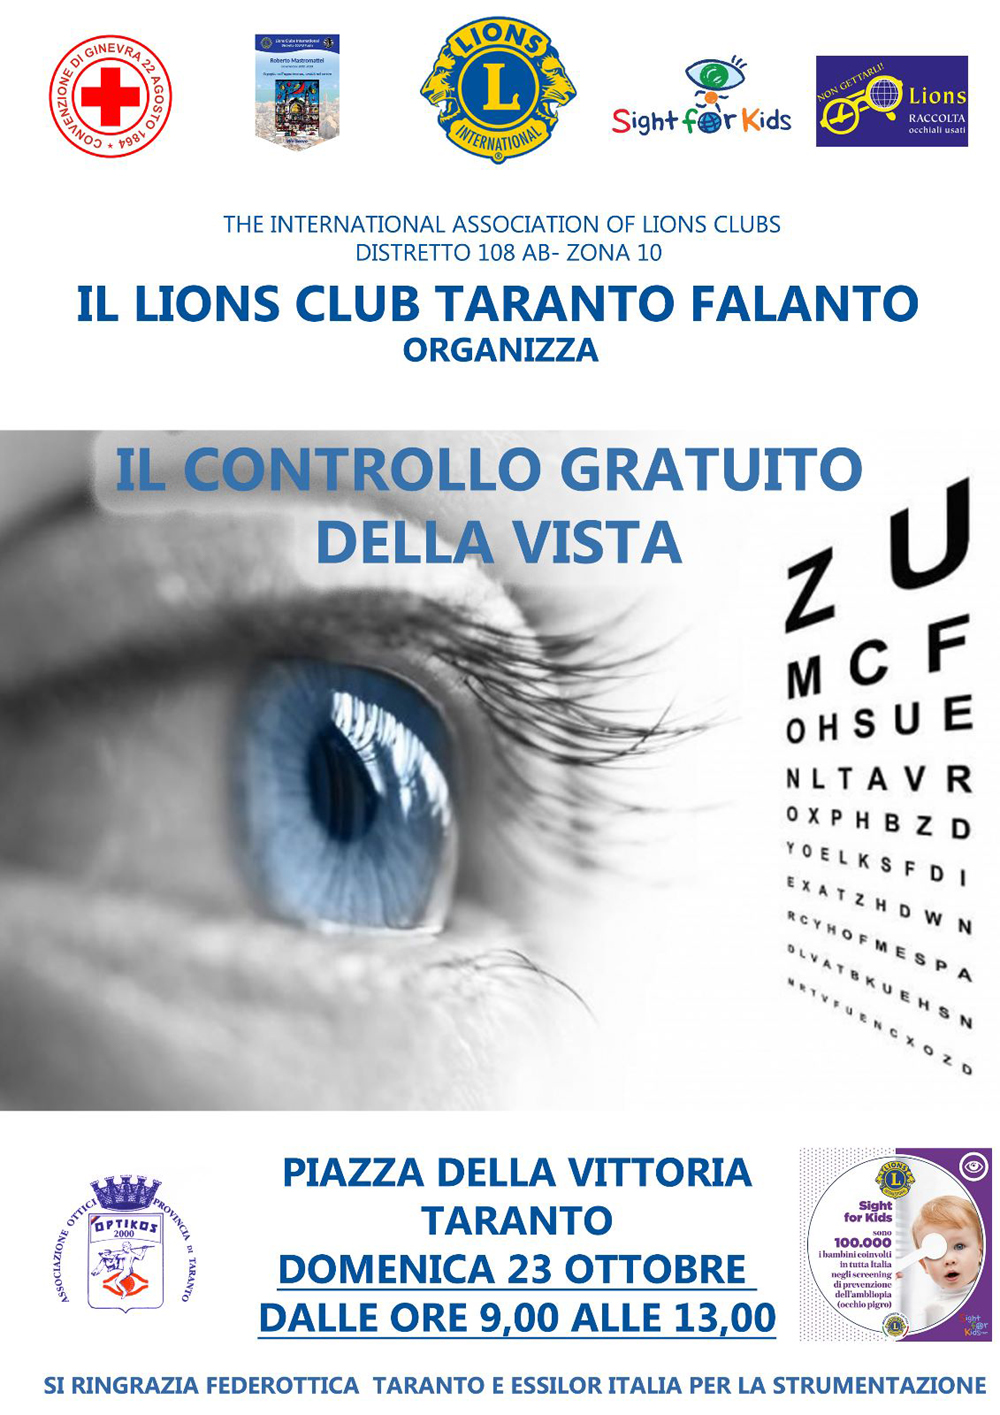 Screening visivi gratuiti organizzati dal Lions Club Taranto Falanto